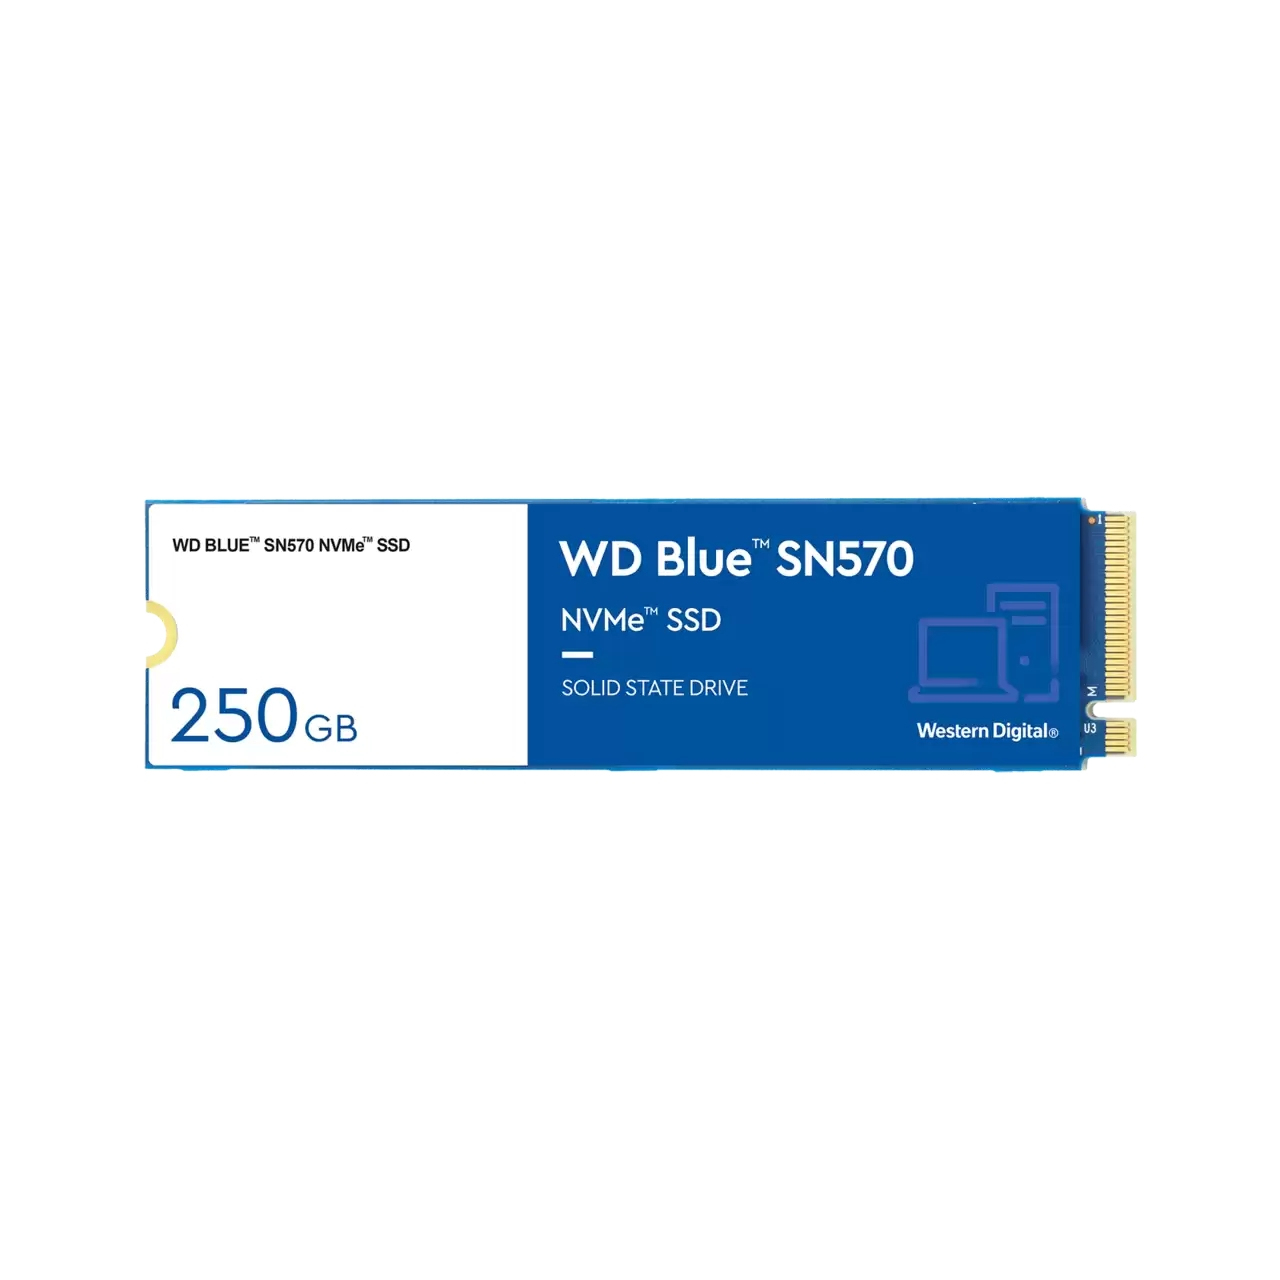 Western Digital WD Blue SN570